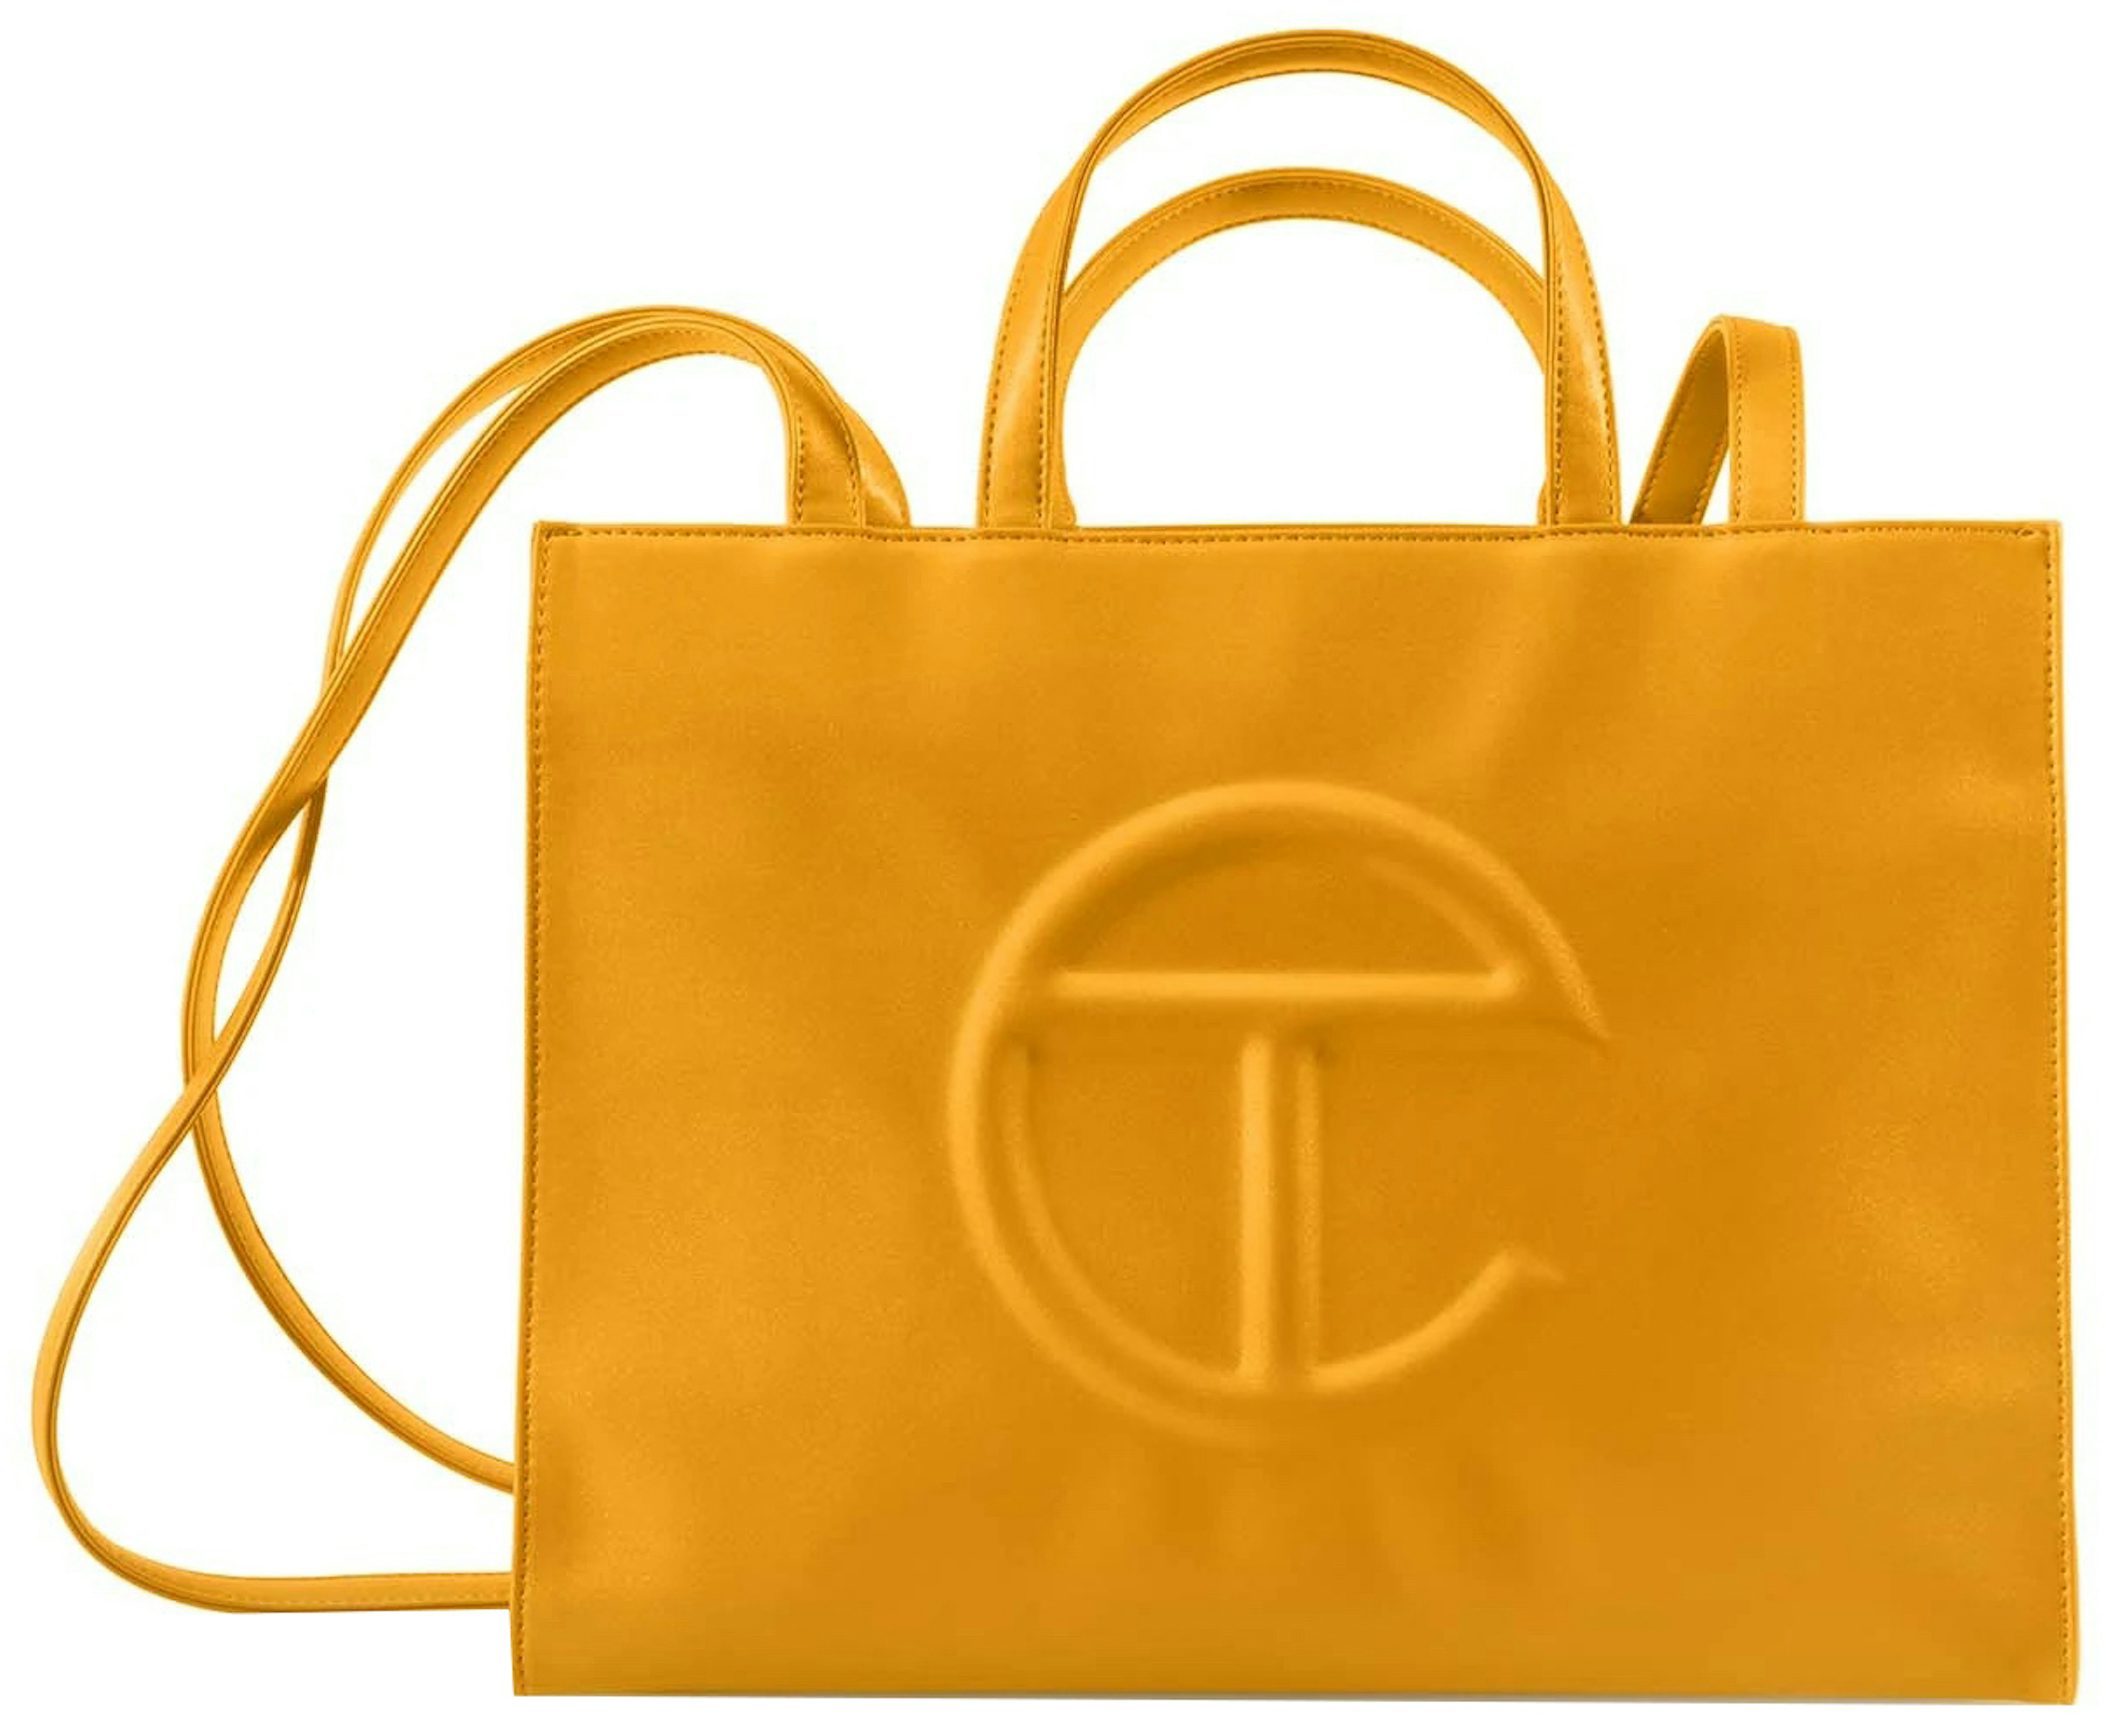 Telfar Shopping Bag Medium Azalea in Vegan Leather - US